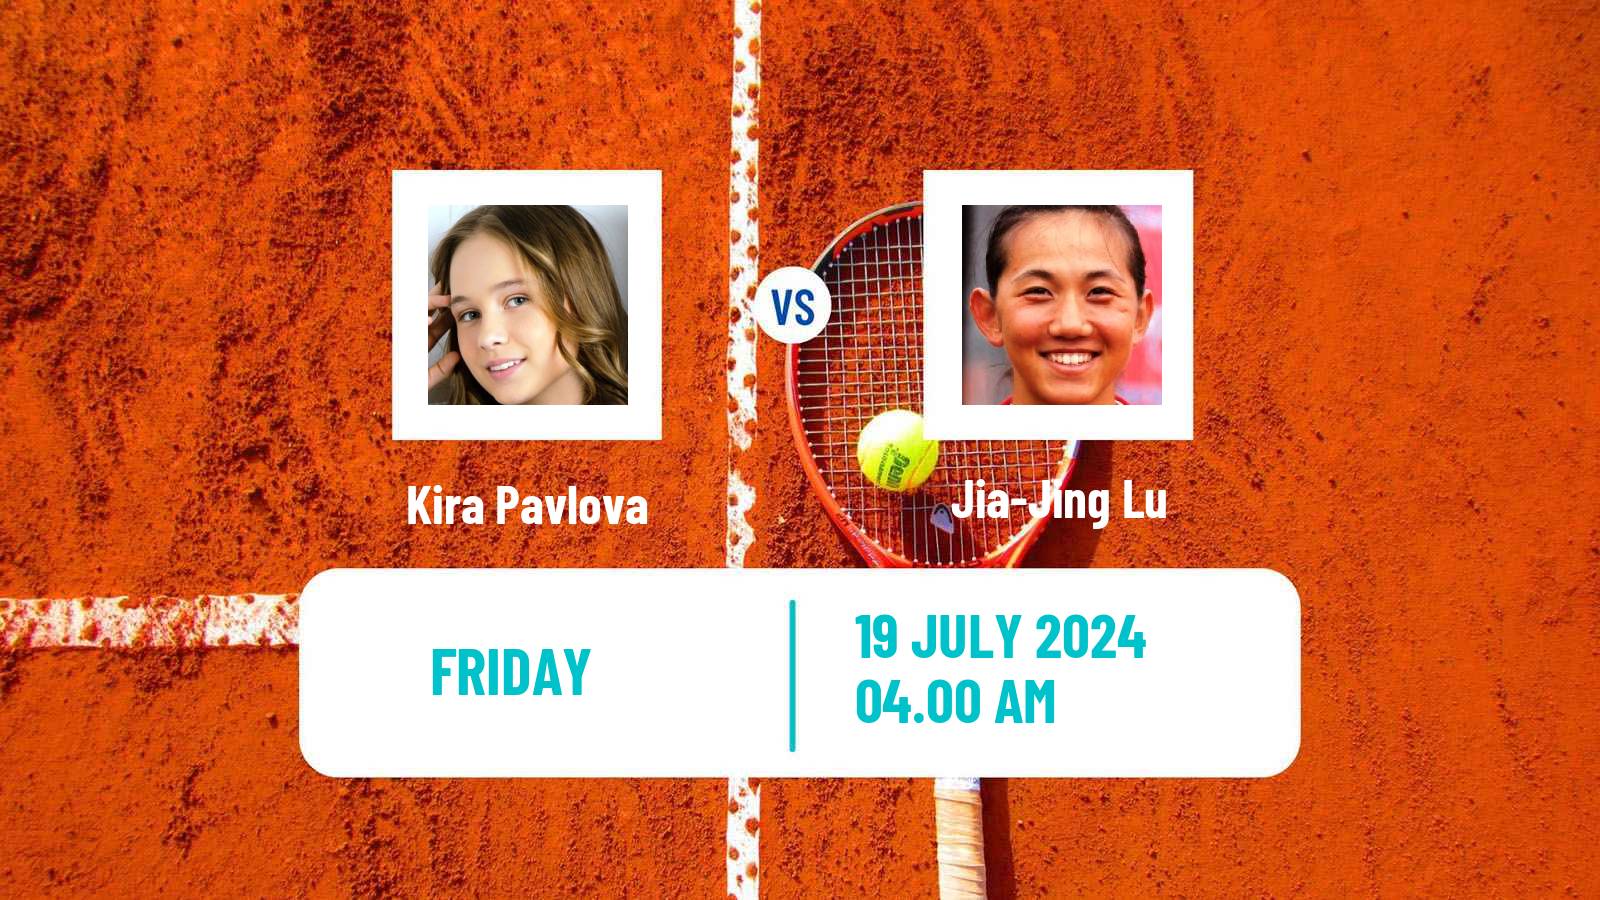 Tennis ITF W35 Tianjin 2 Women Kira Pavlova - Jia-Jing Lu